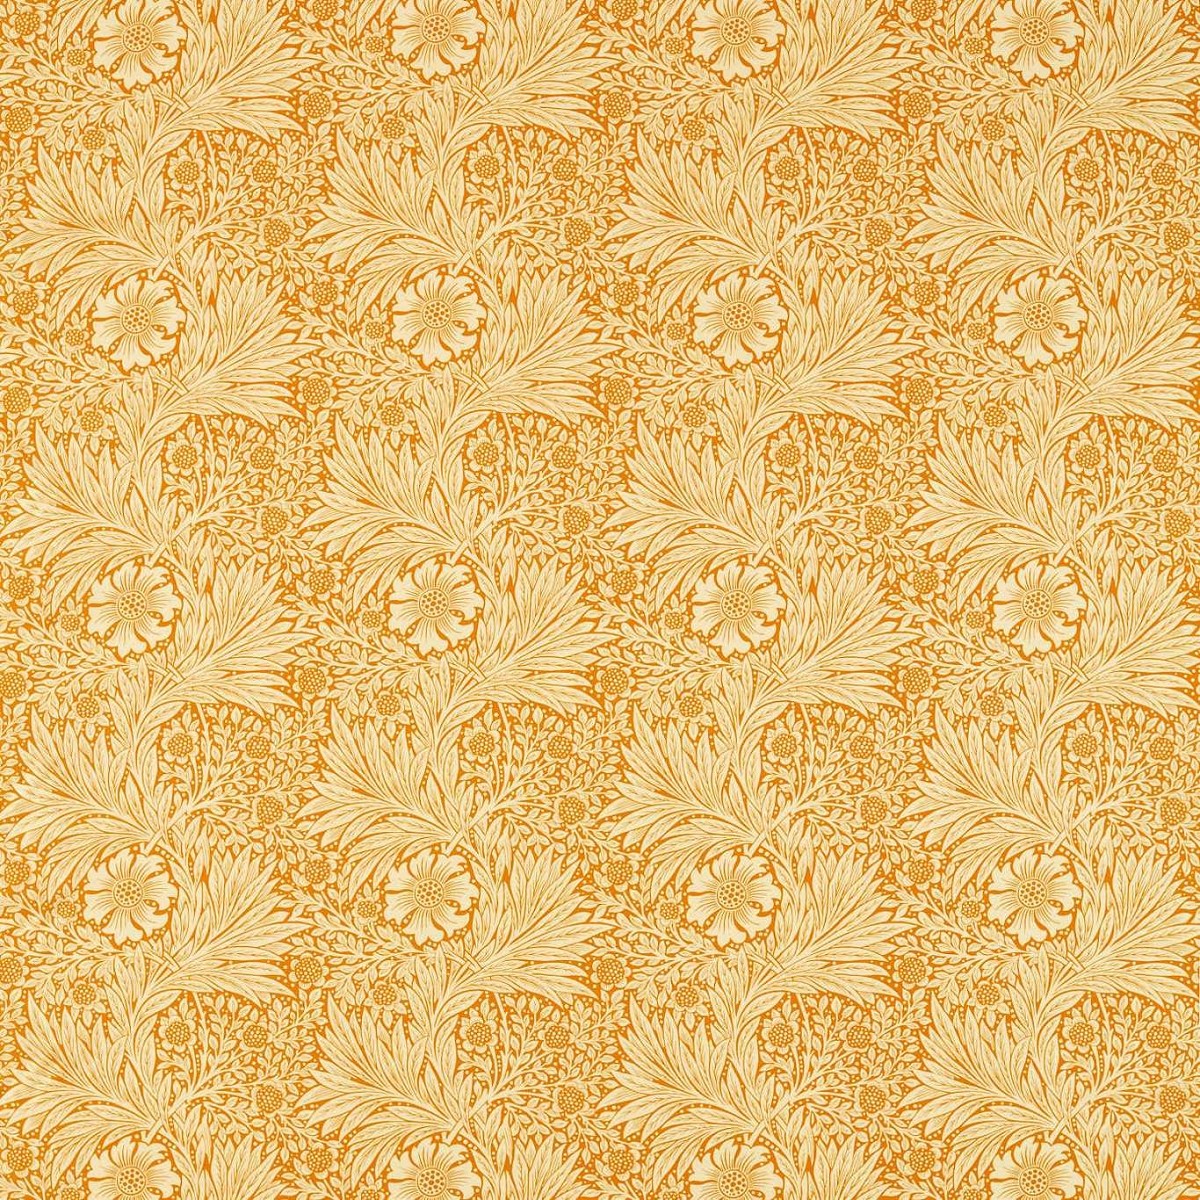 Marigold Cream/Orange Fabric by William Morris & Co.